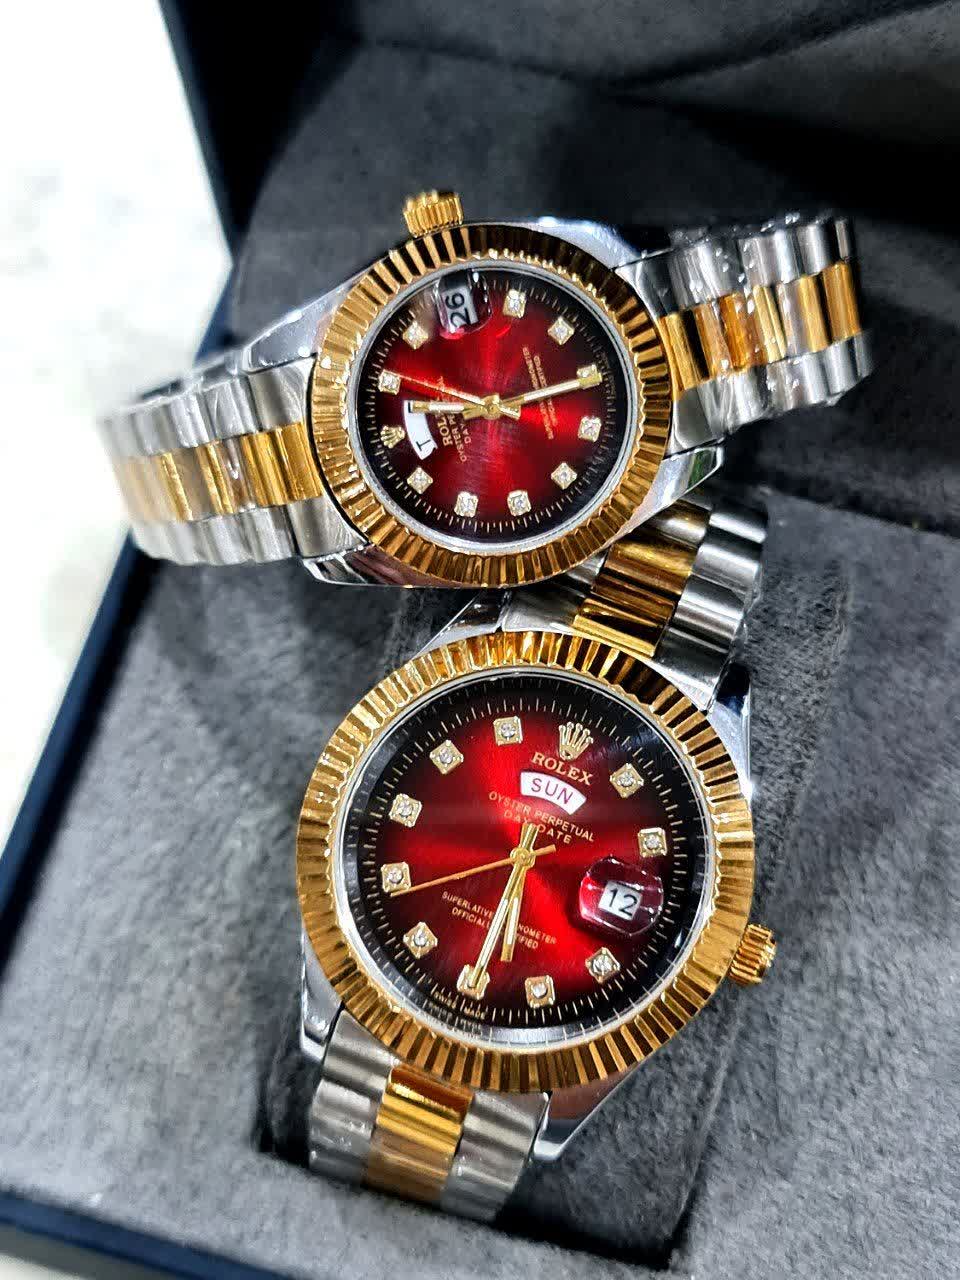 Rolex Day-Date set watch